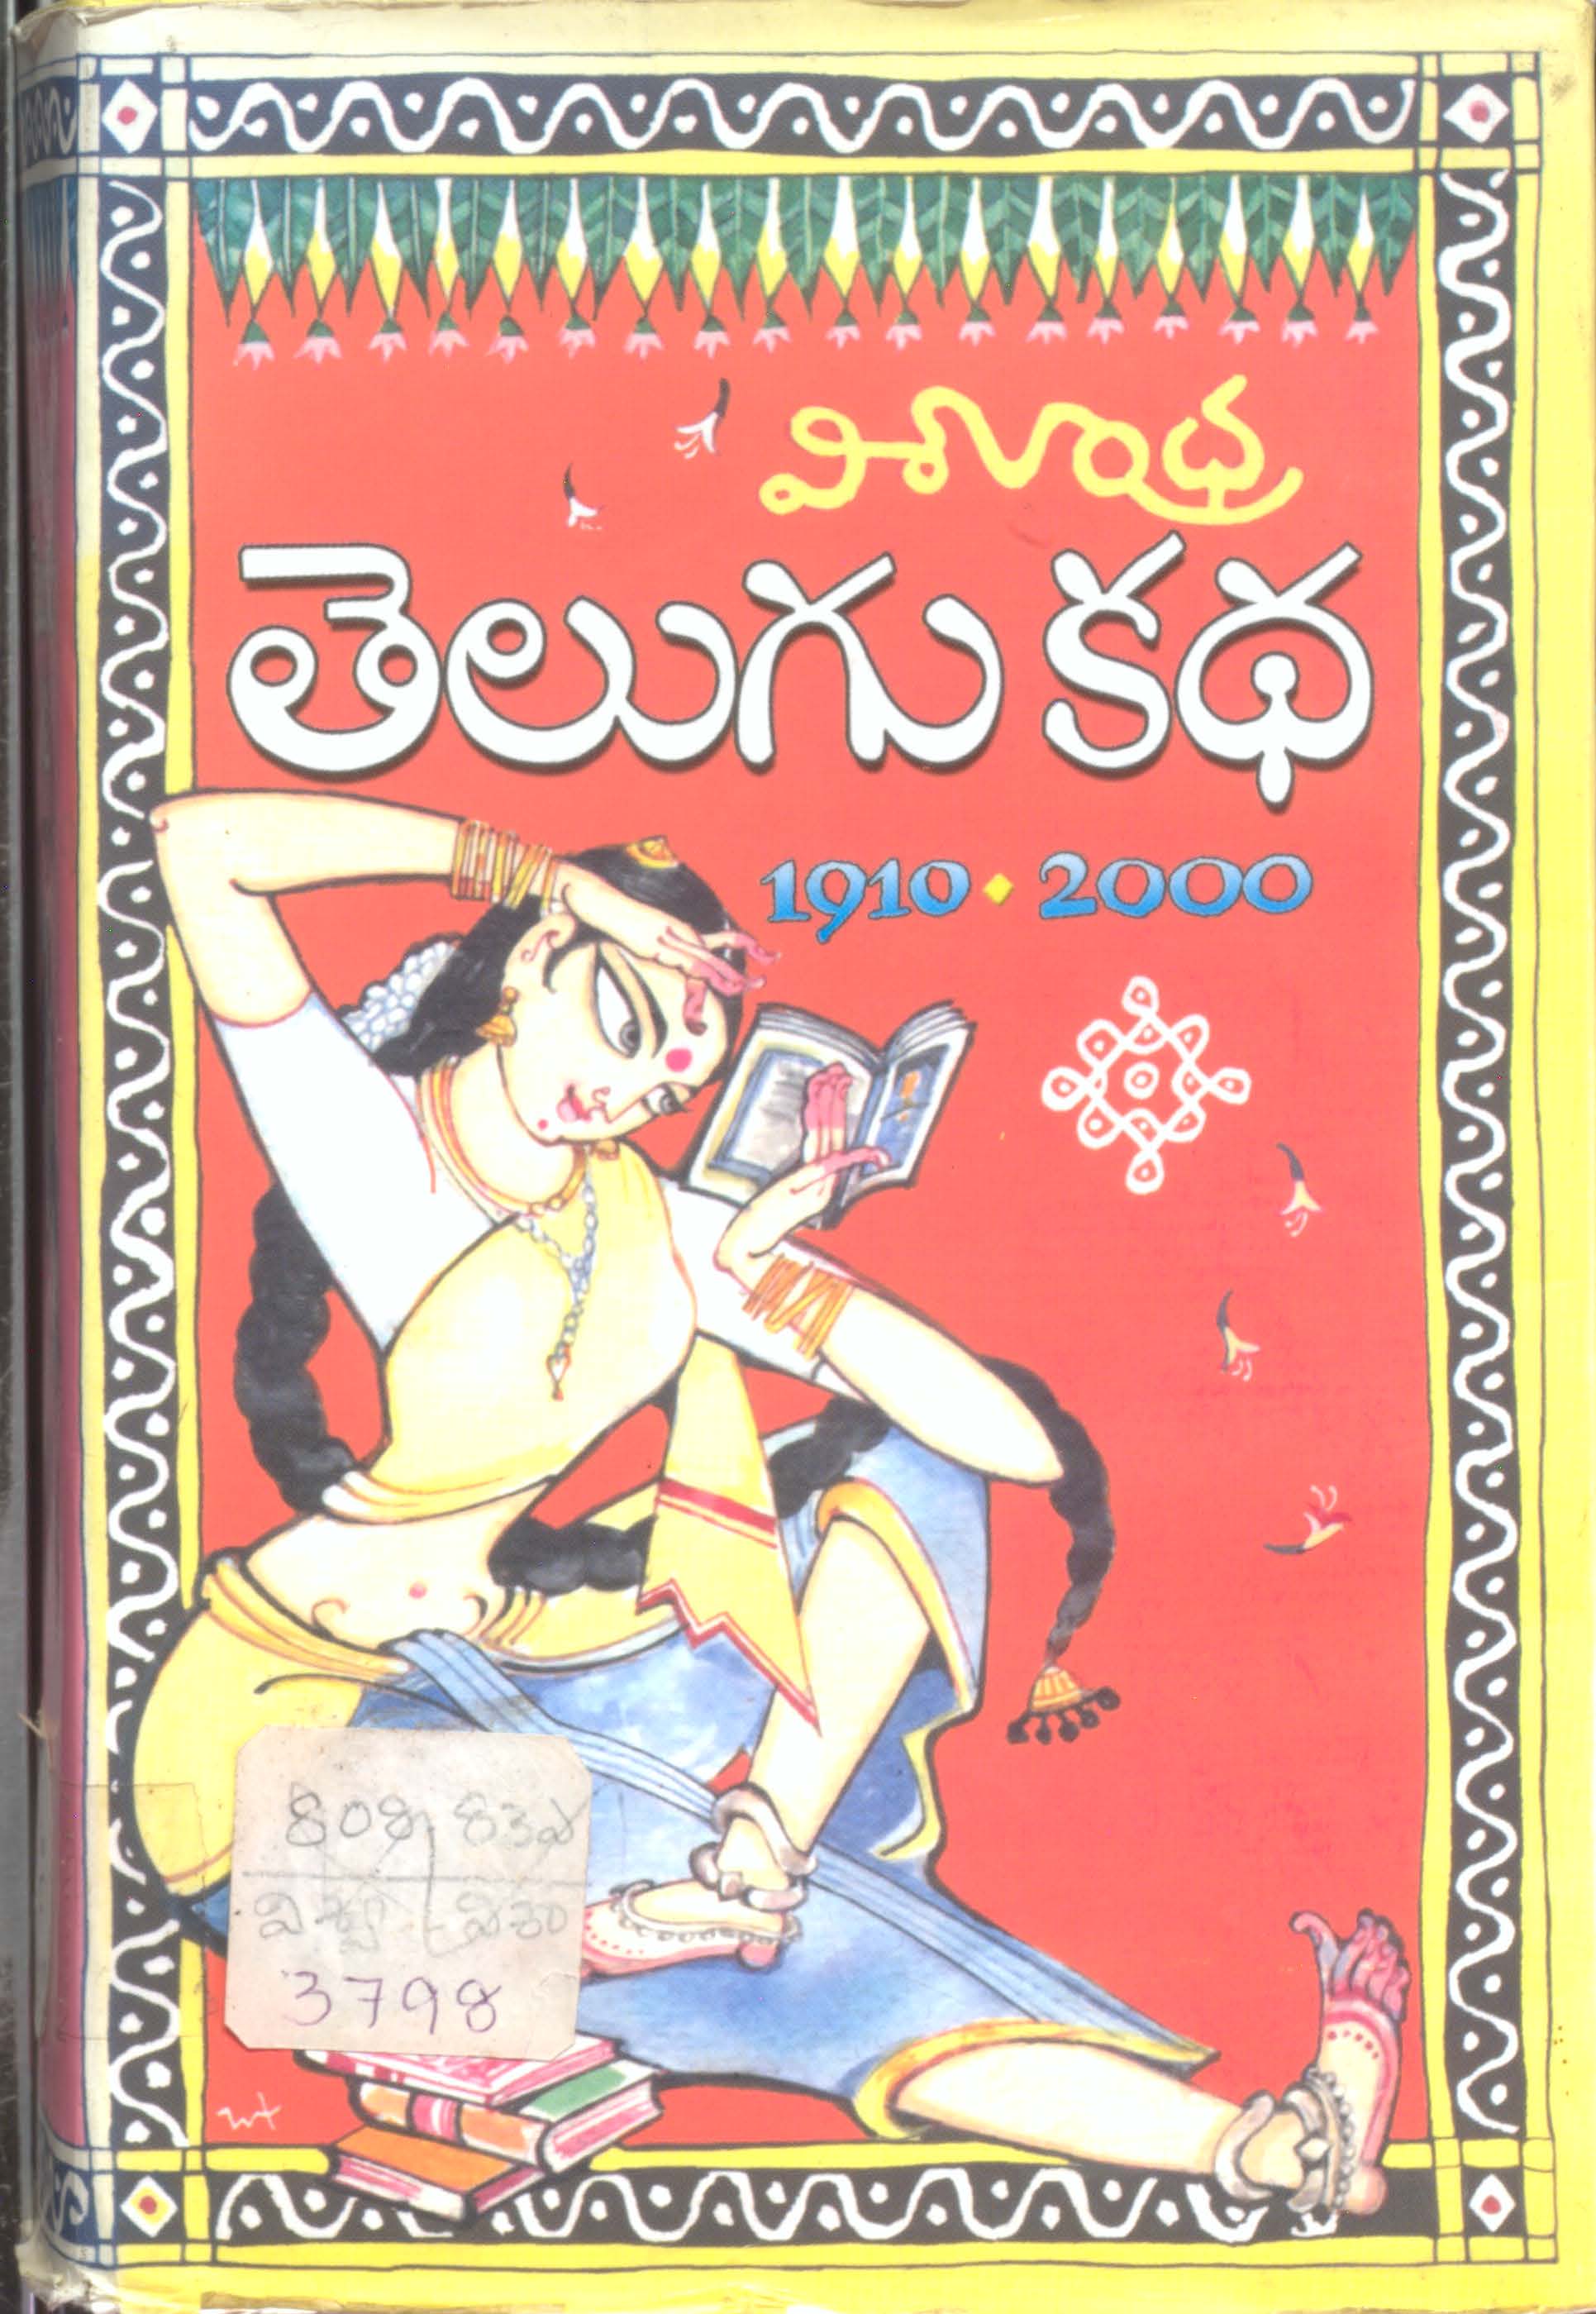 విశాలాంధ్ర తెలుగు కథ 1910-2000